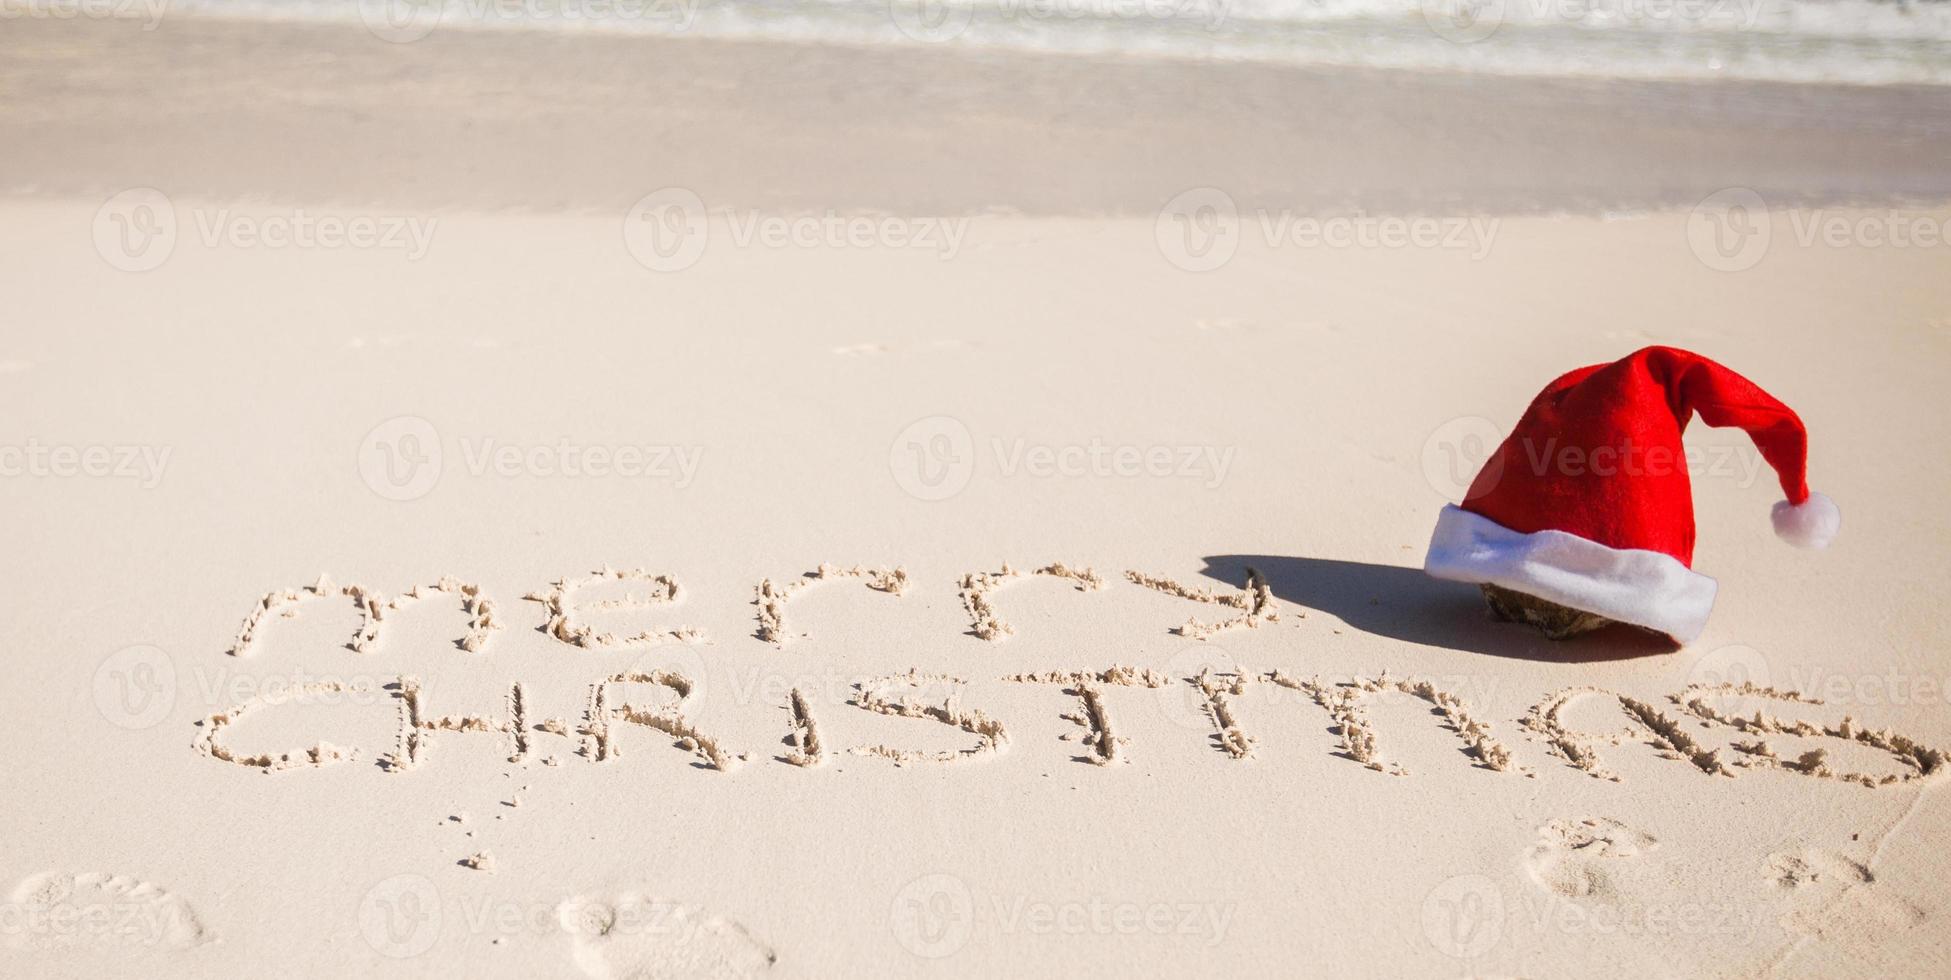 sombrero de santa en la playa de arena blanca y feliz navidad escrito en la arena foto